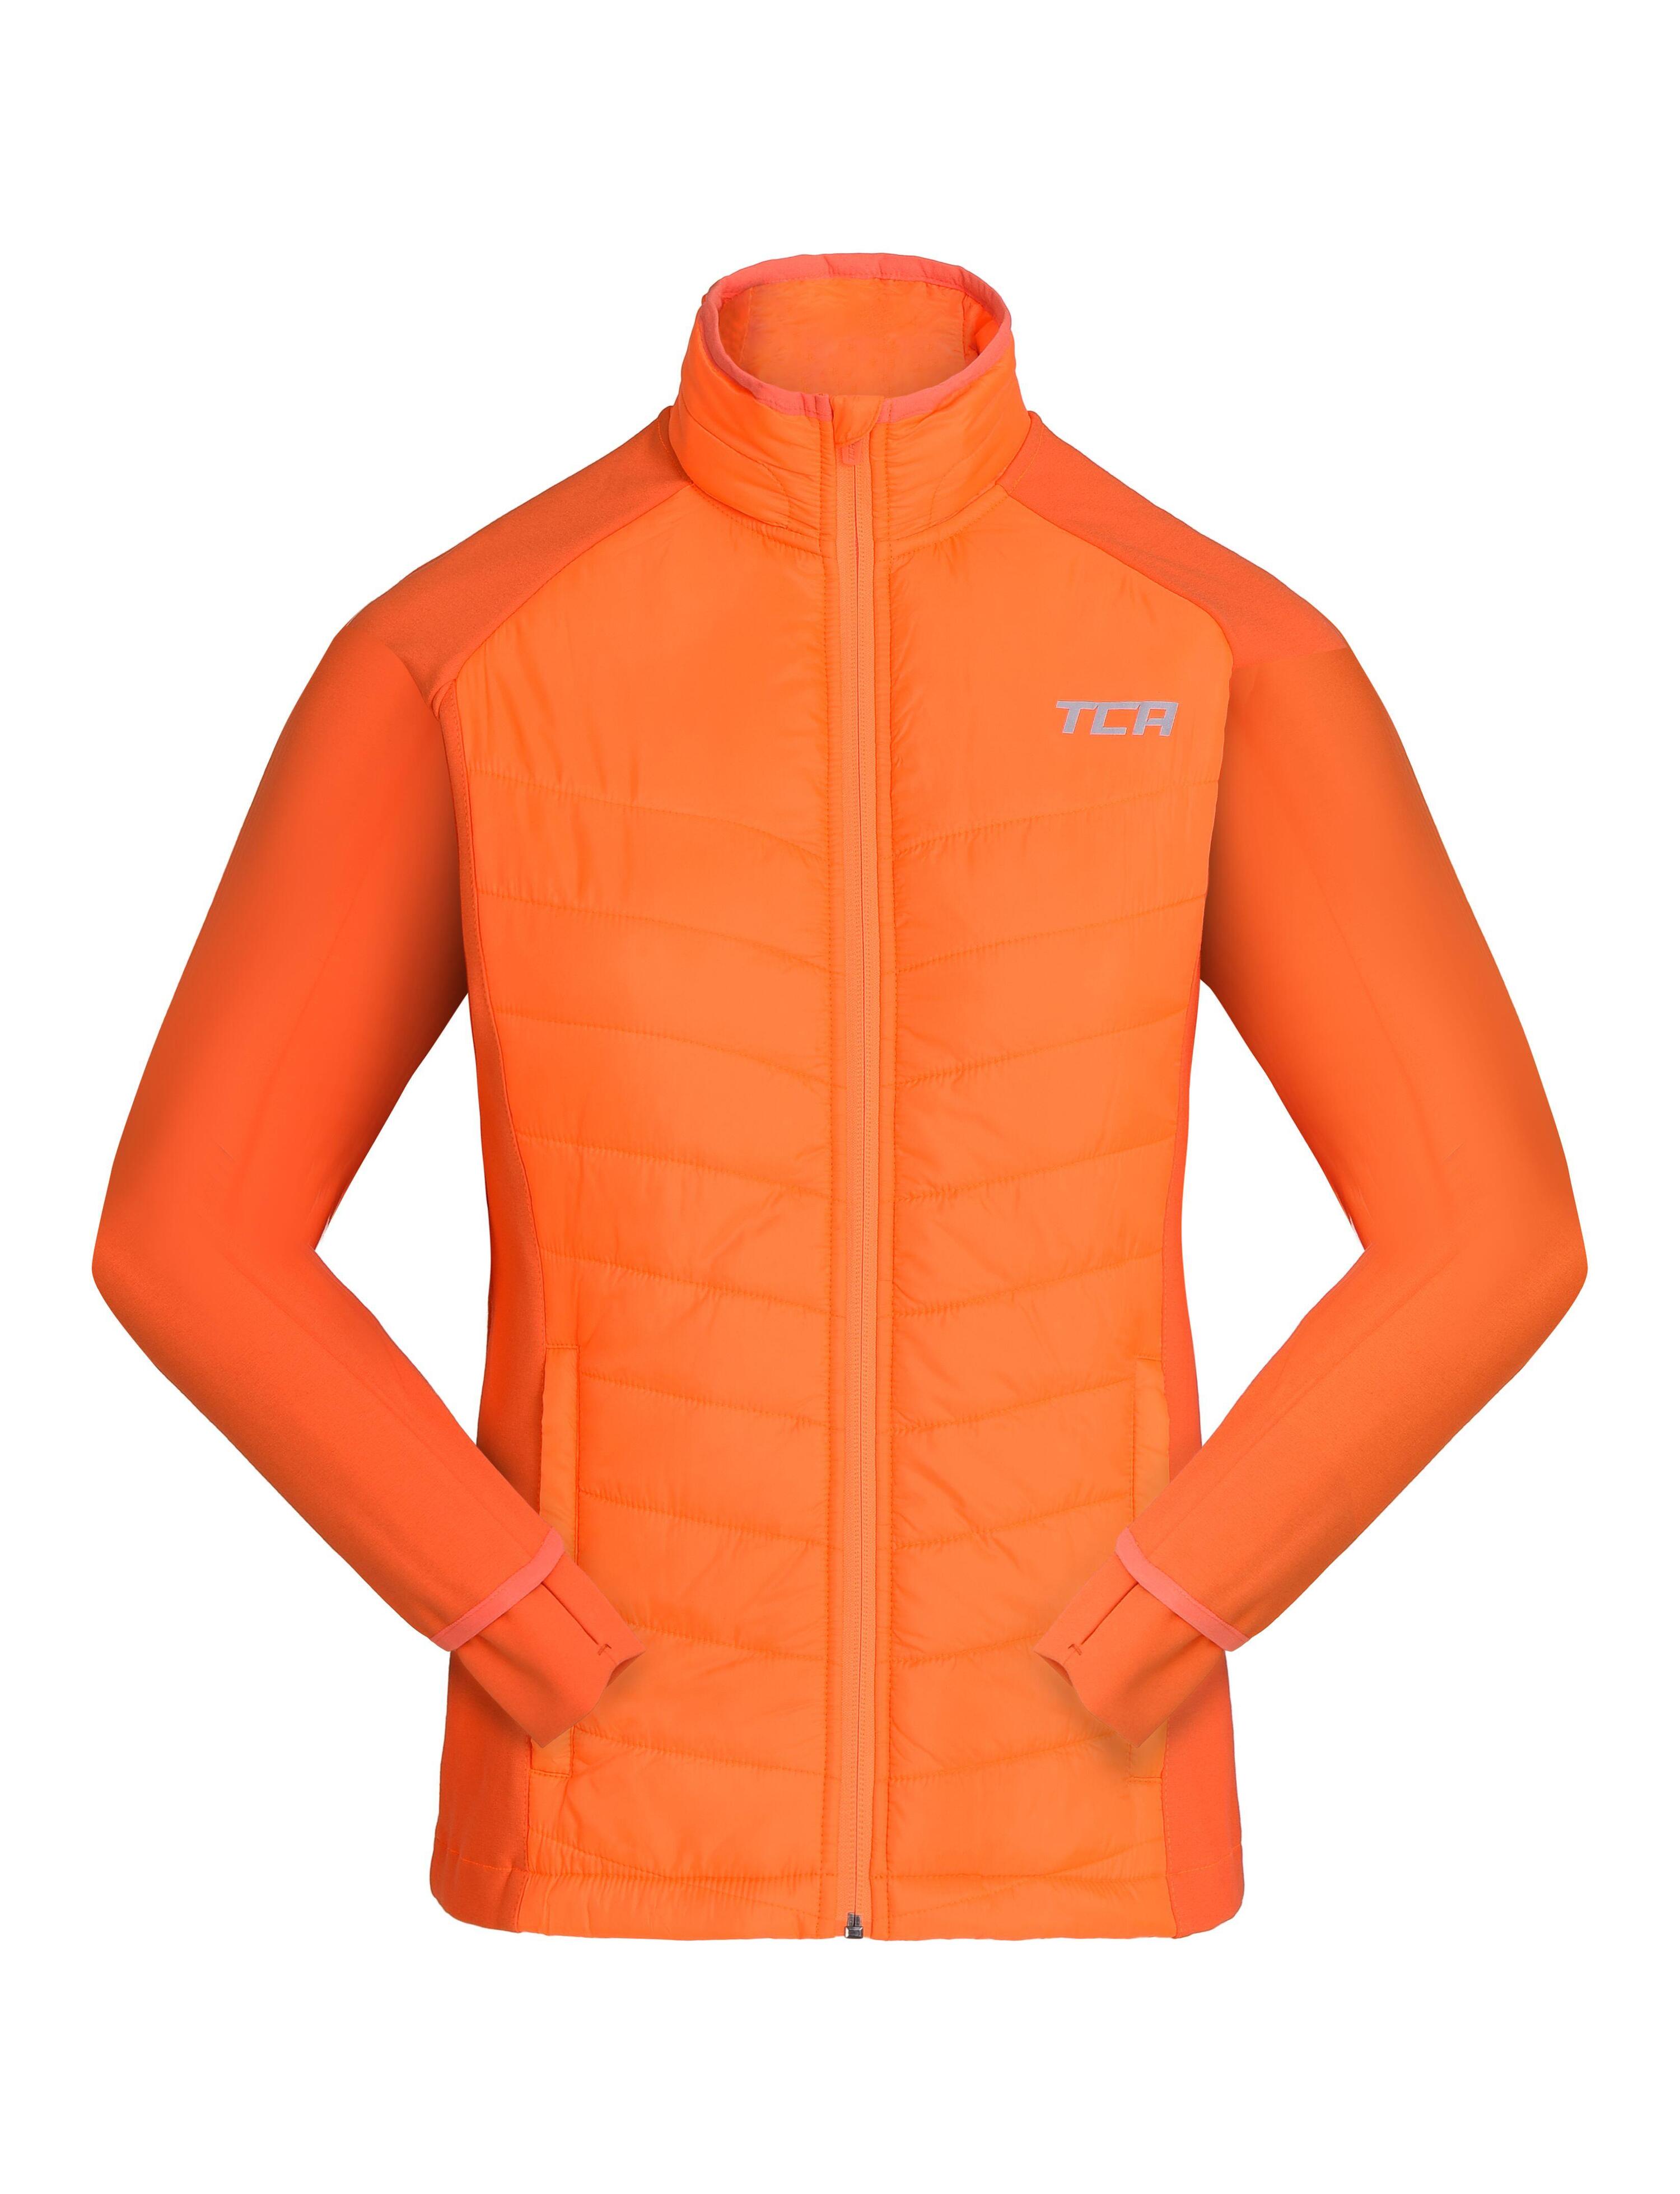 Girls' Excel All-Season Lightweight Jacket - Neon Orange 1/4